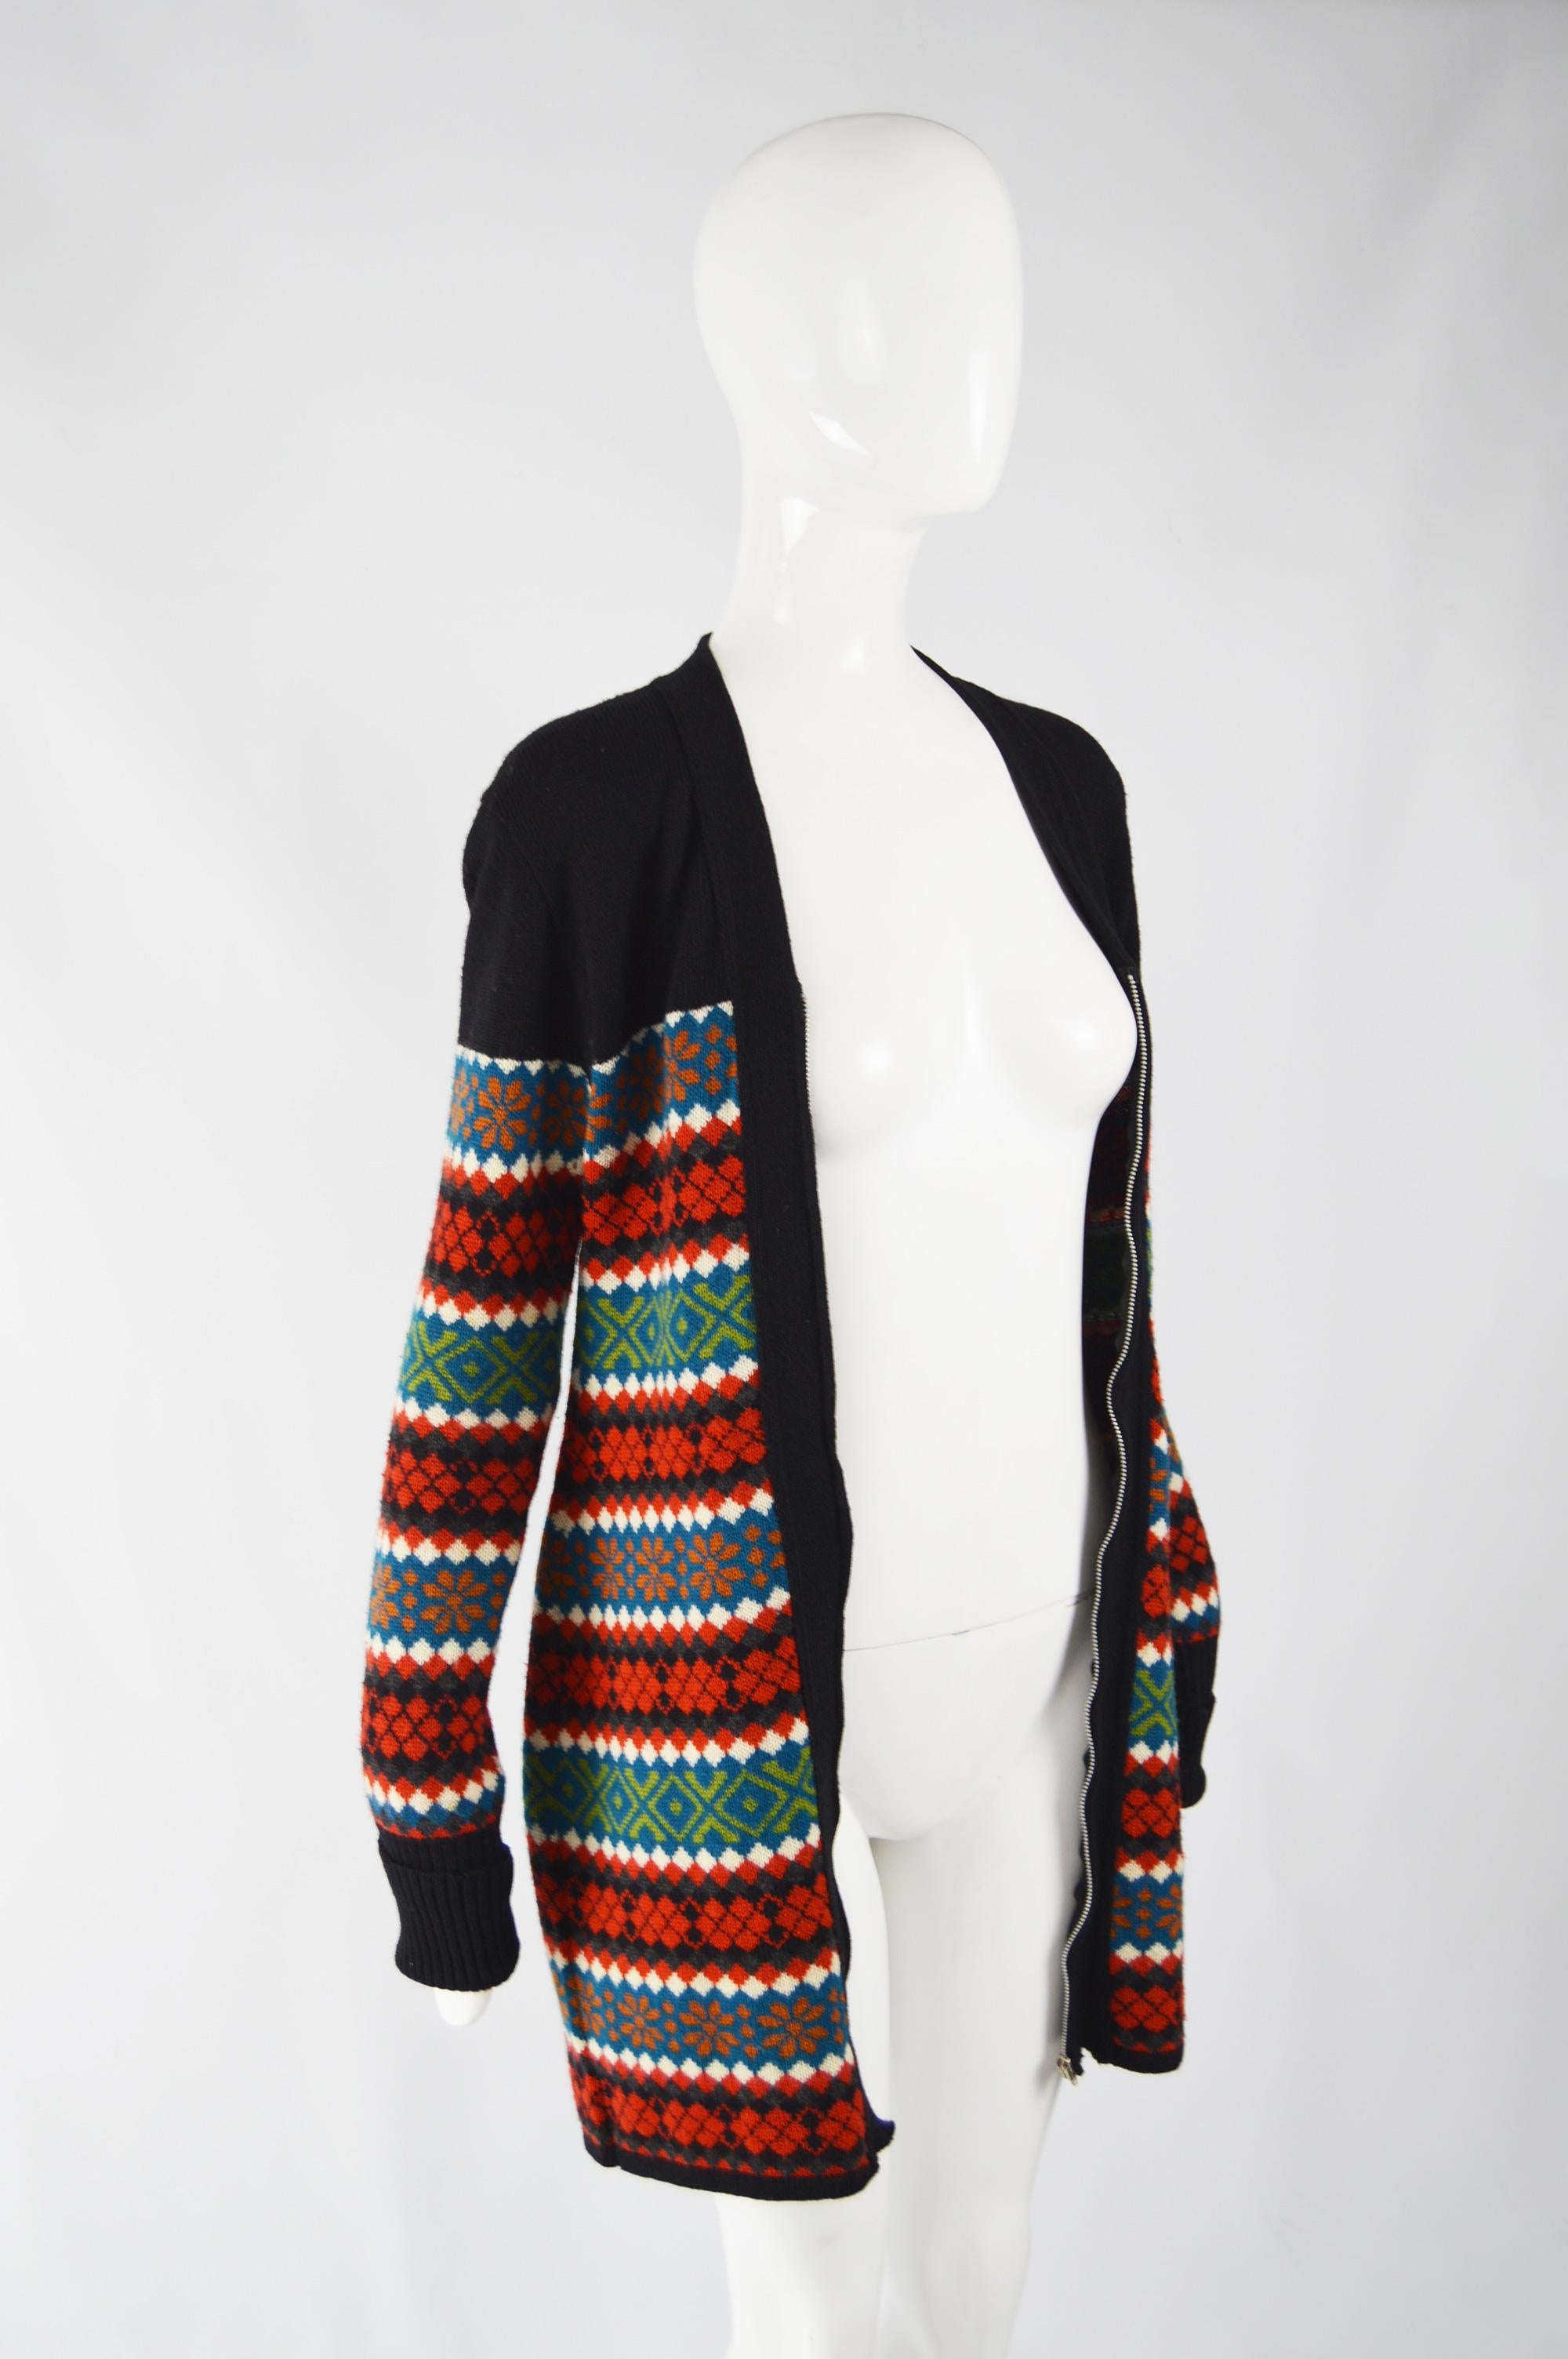 Black Jean Paul Gaultier Wool Knit Sweater Dress